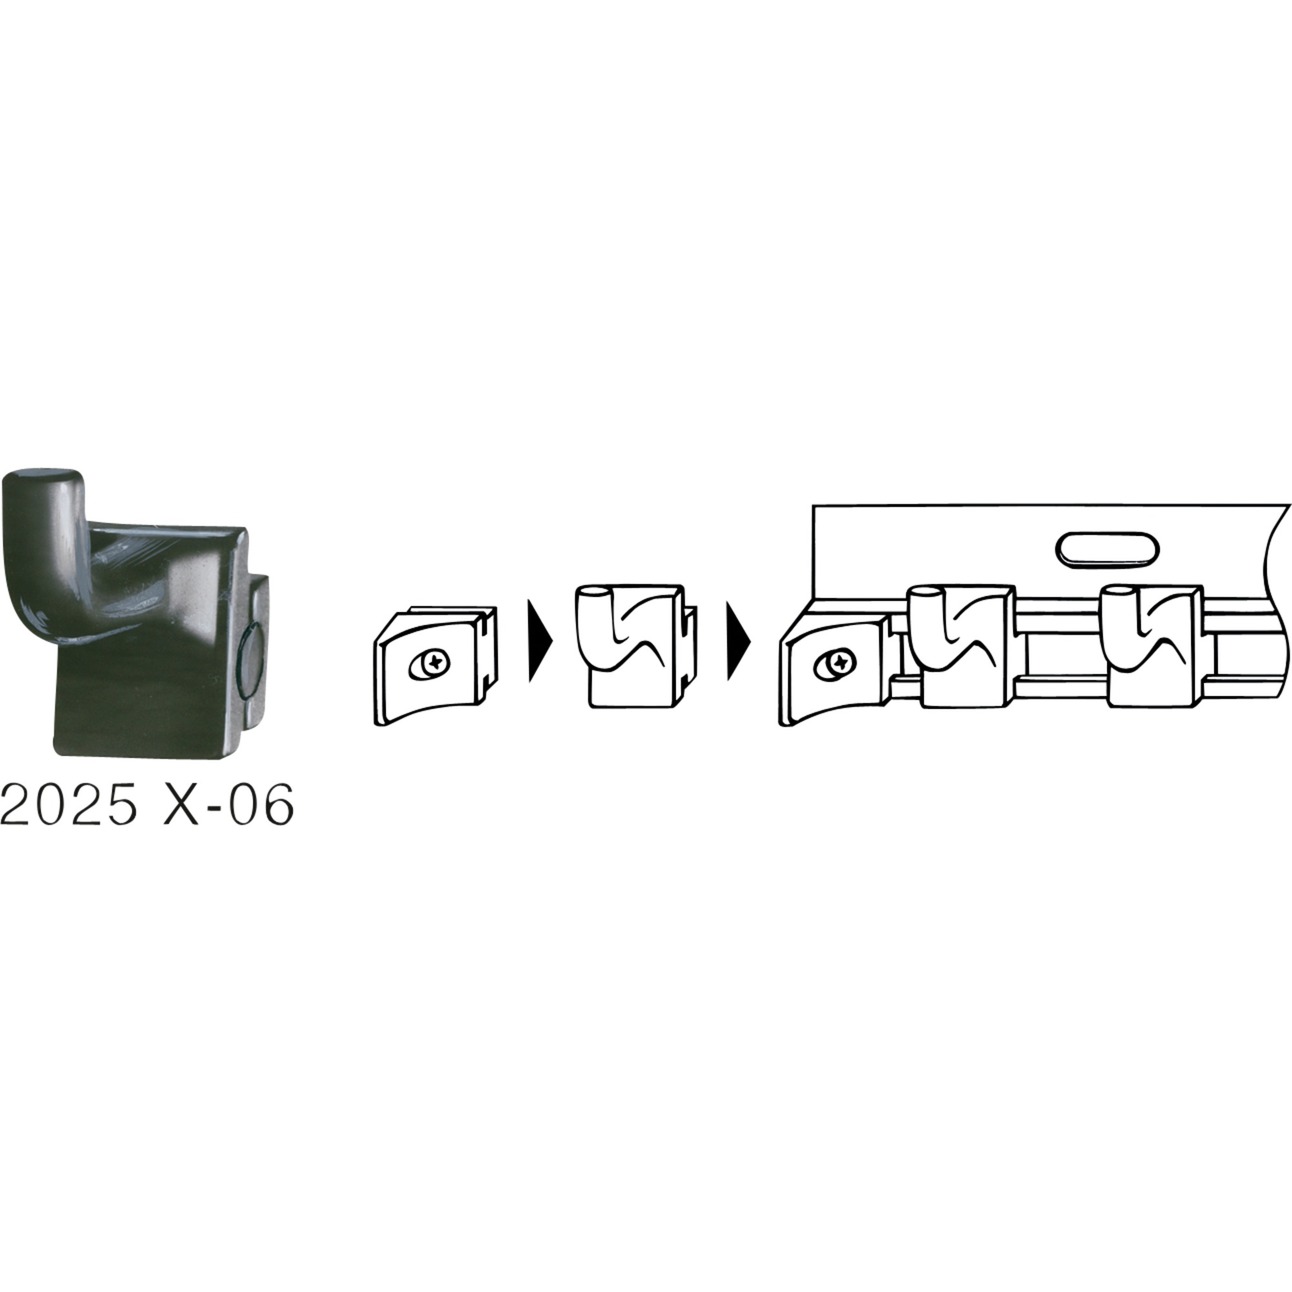 Image of Alternate - Werkzeughaken 2025X-06, Halterung online einkaufen bei Alternate